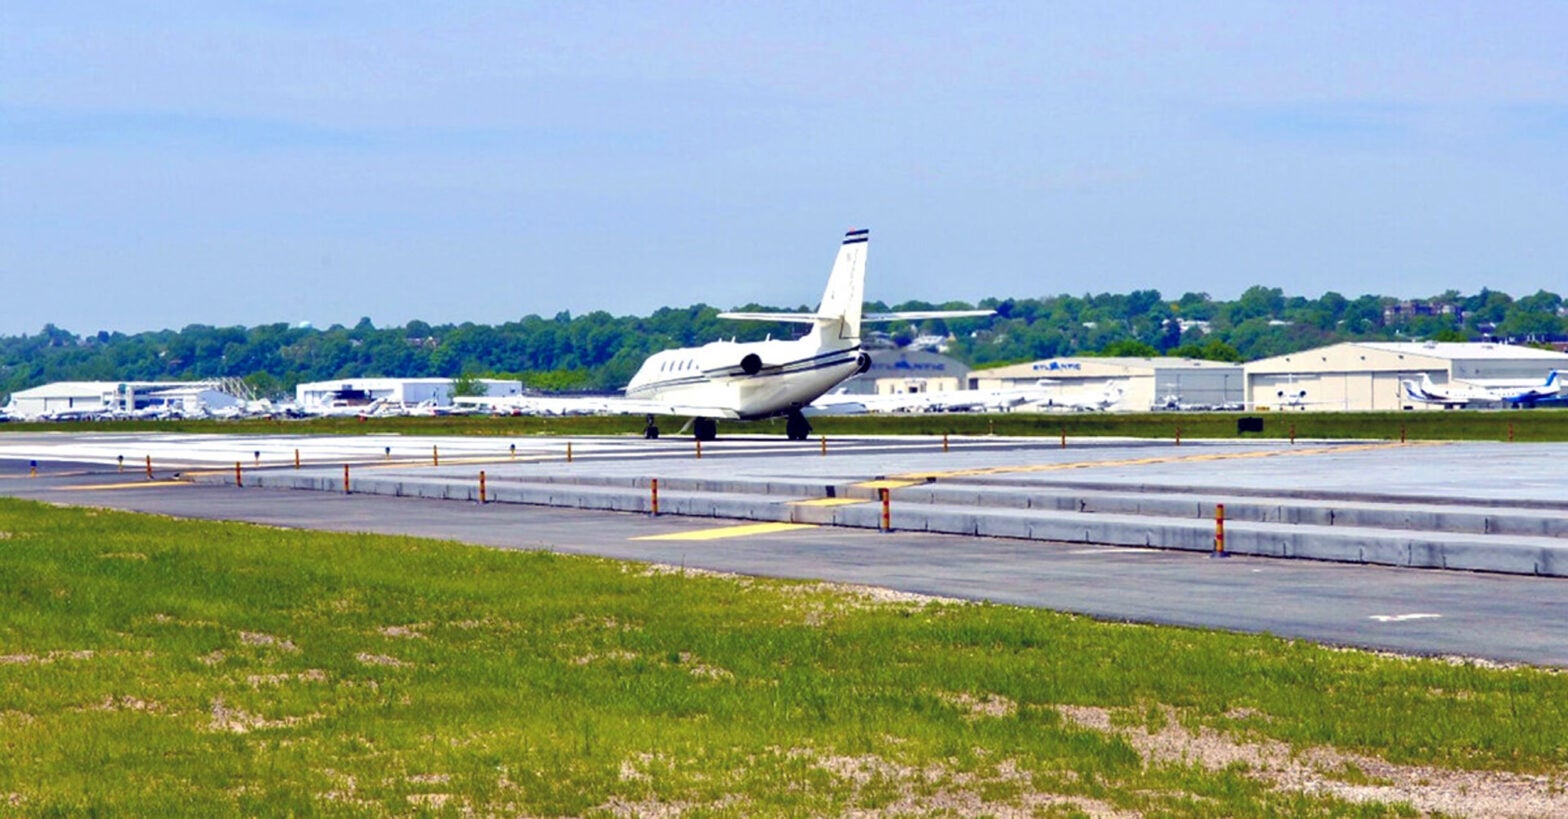 Aircraft Noise Remains a Concern at Teterboro